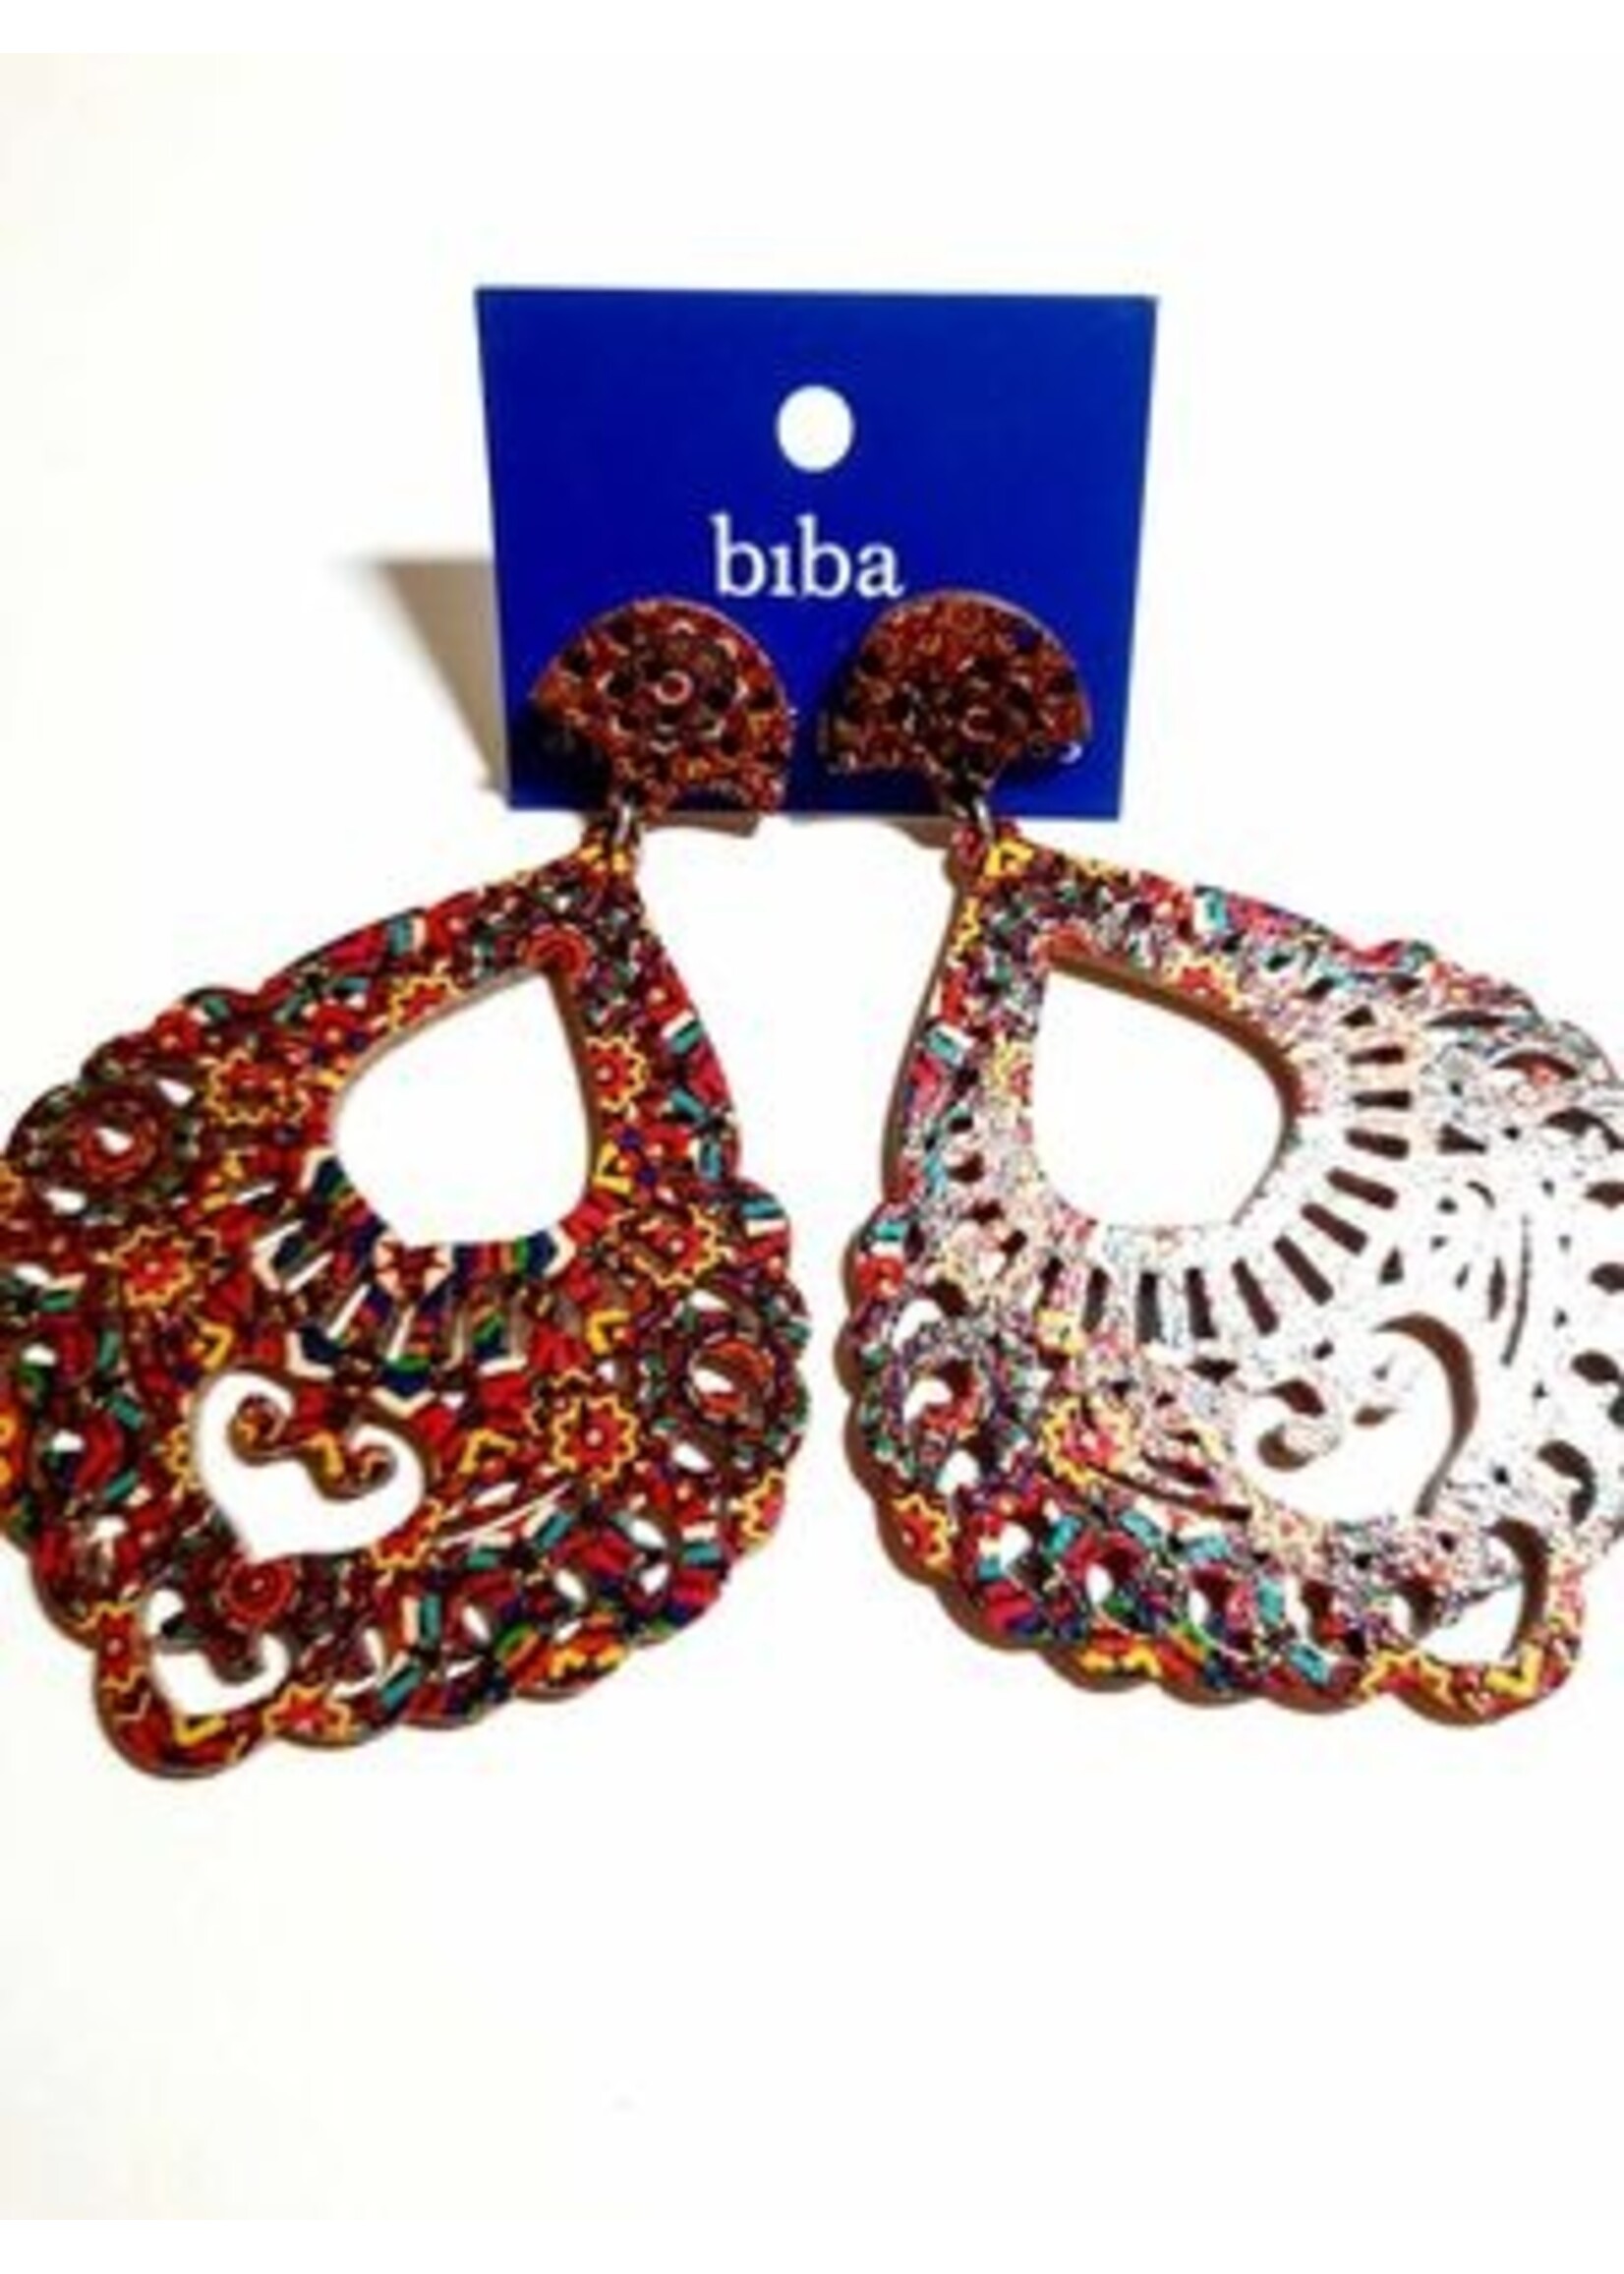 Biba Biba oorhangers hout Marrakesh mix kleur